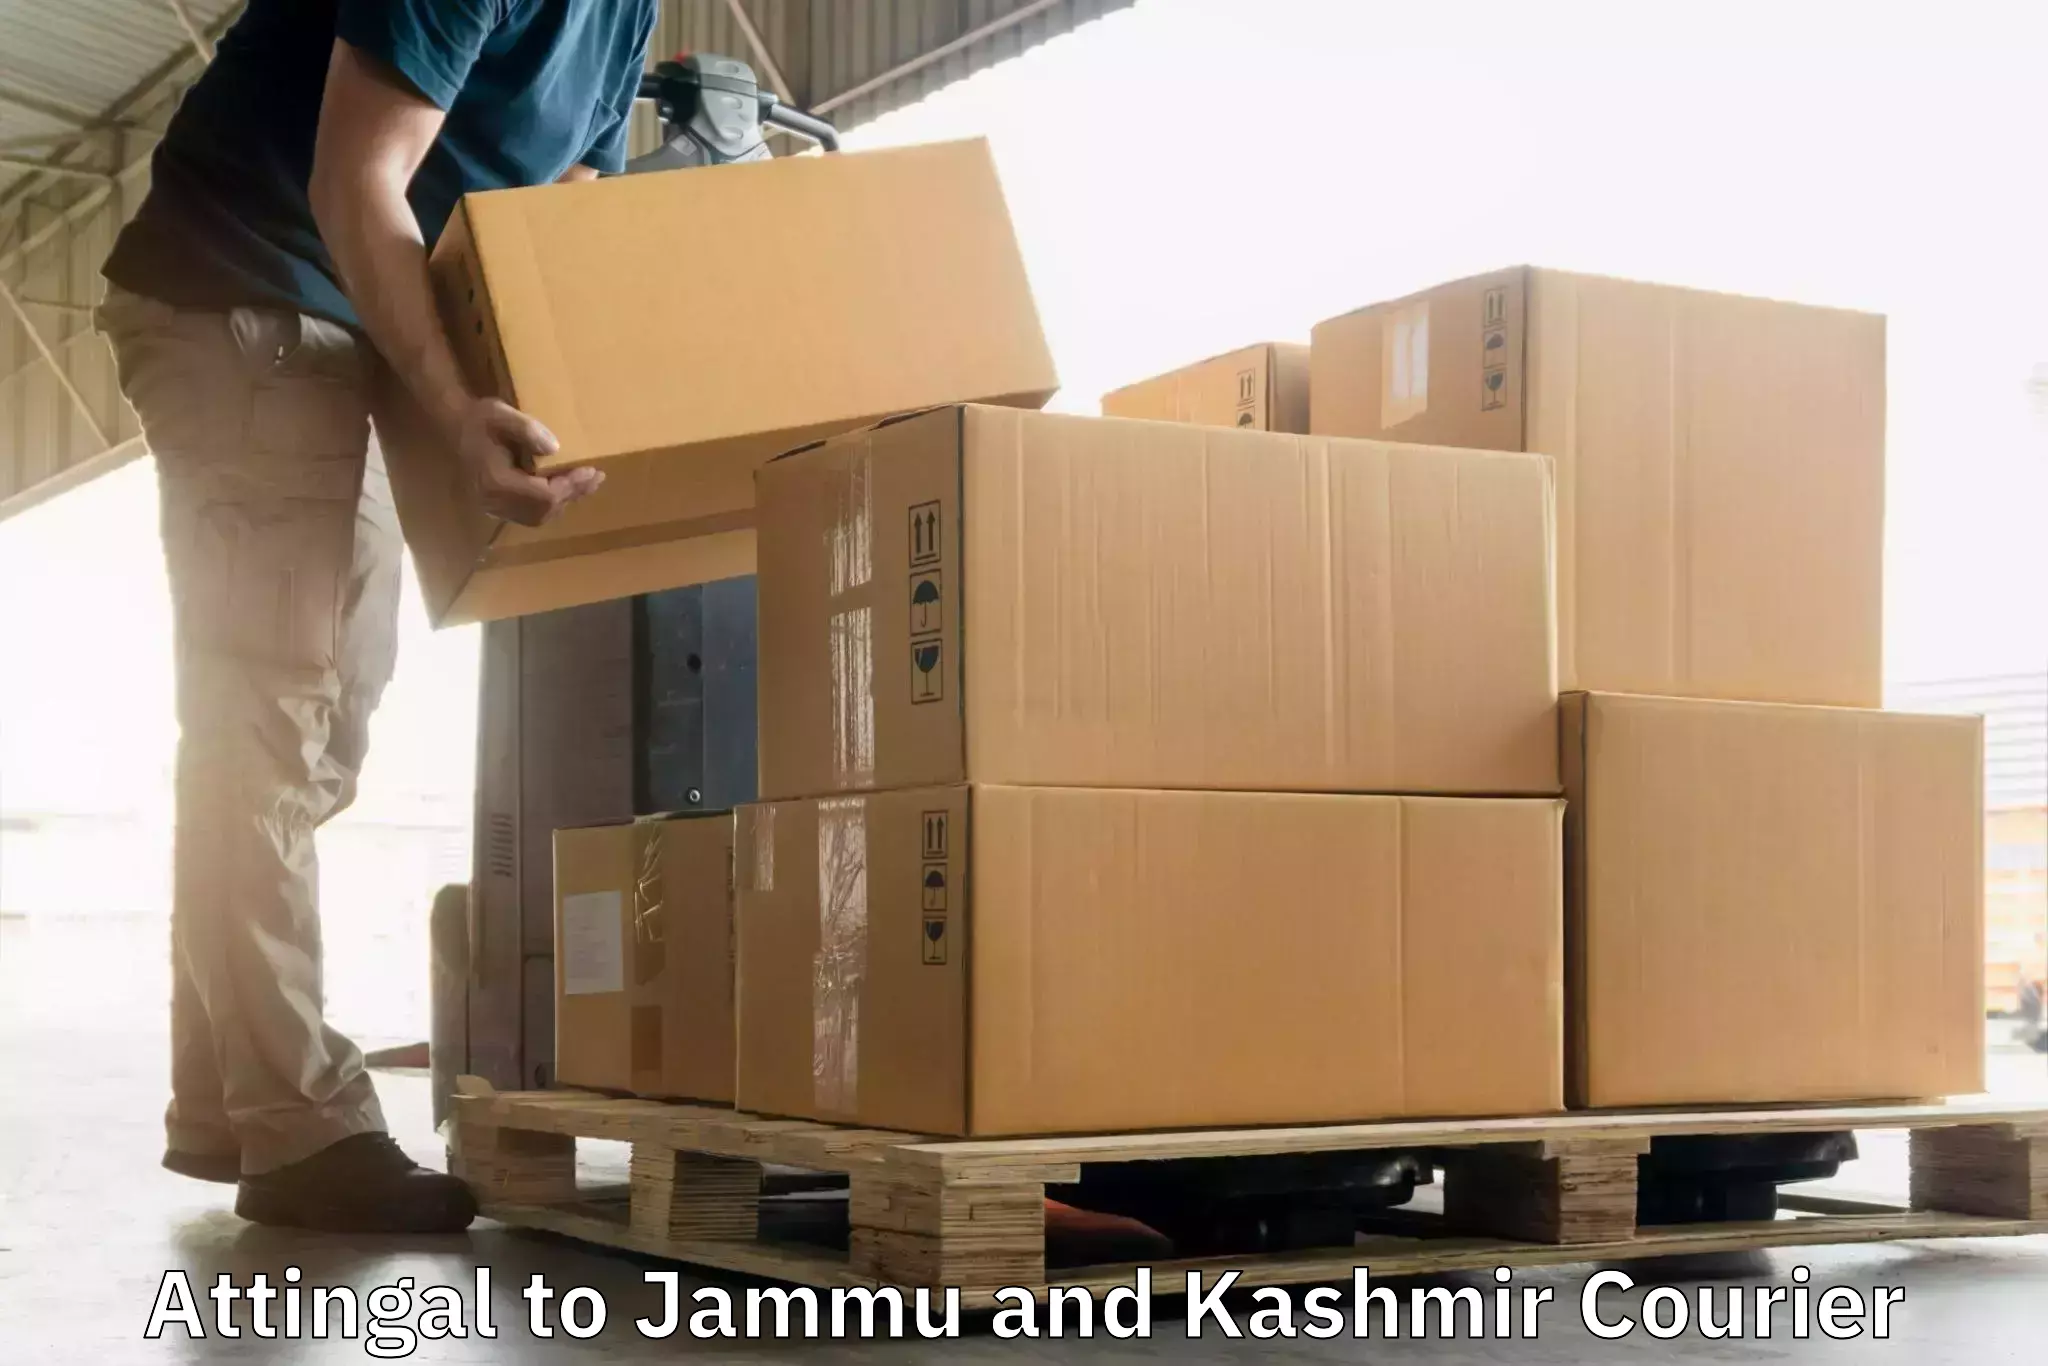 Multi-service courier options Attingal to Kishtwar